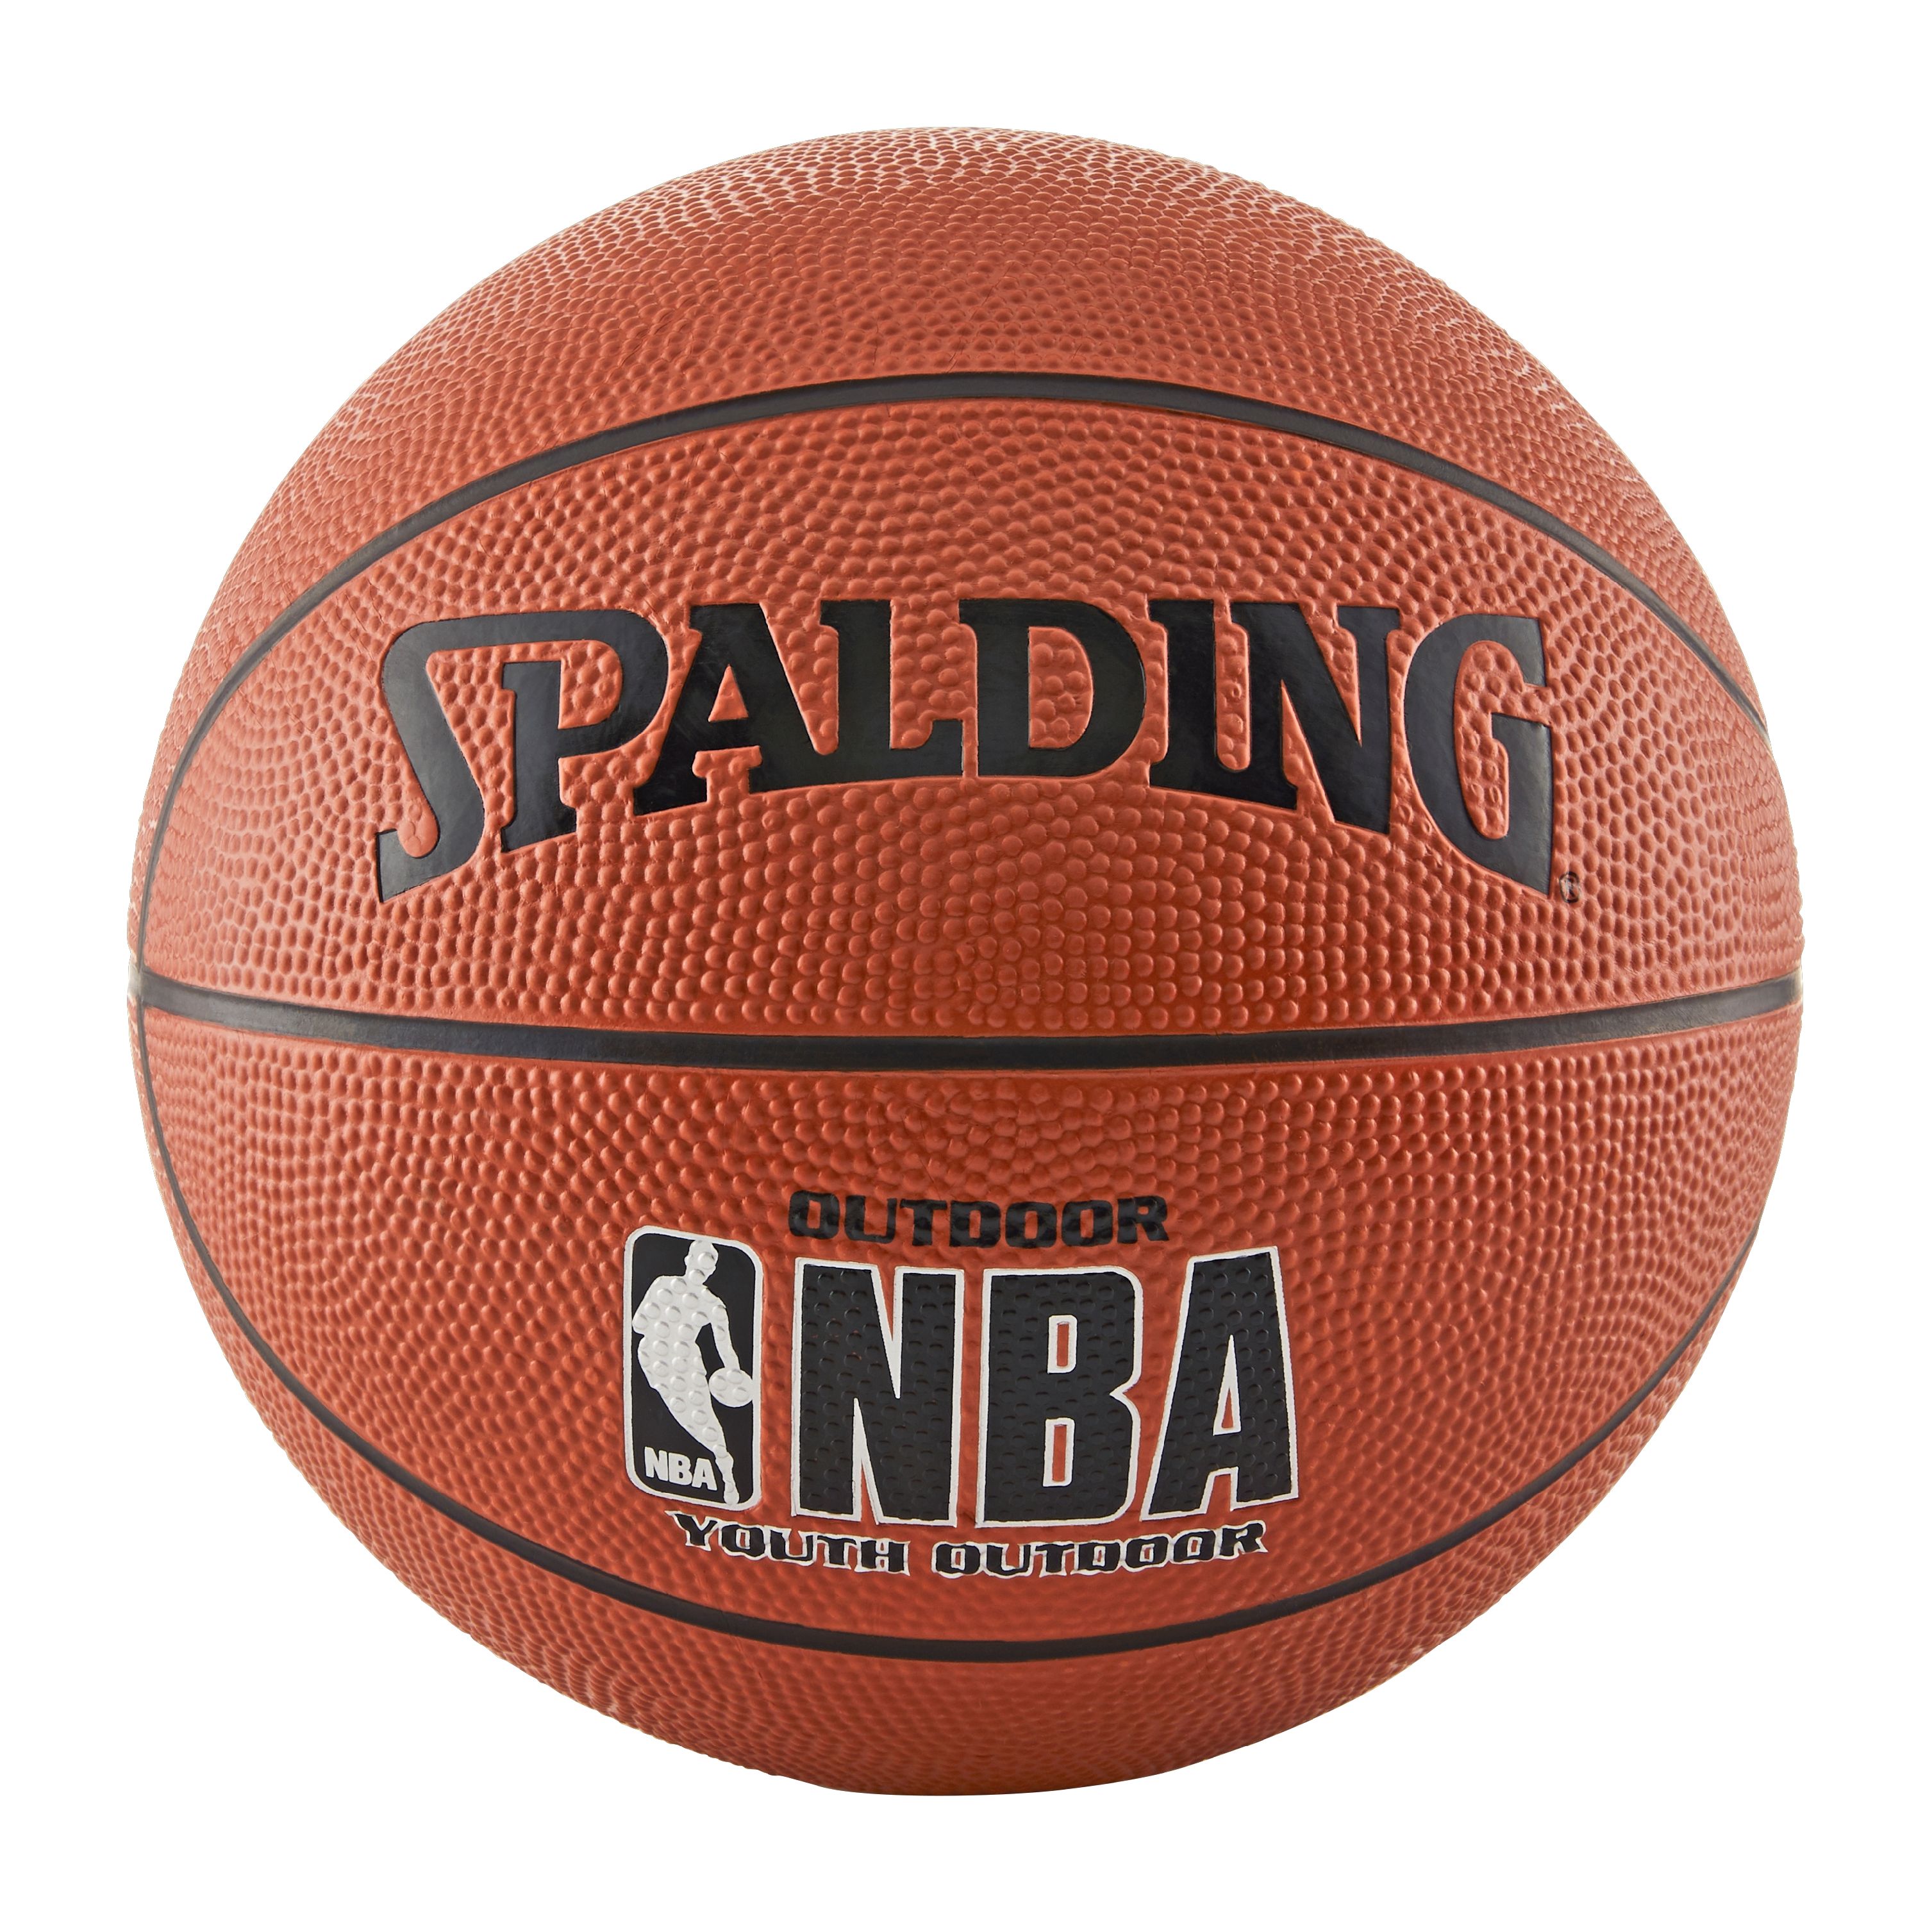 Spalding NBA Varsity Basketball, Youth Size (27.5") - image 1 of 4